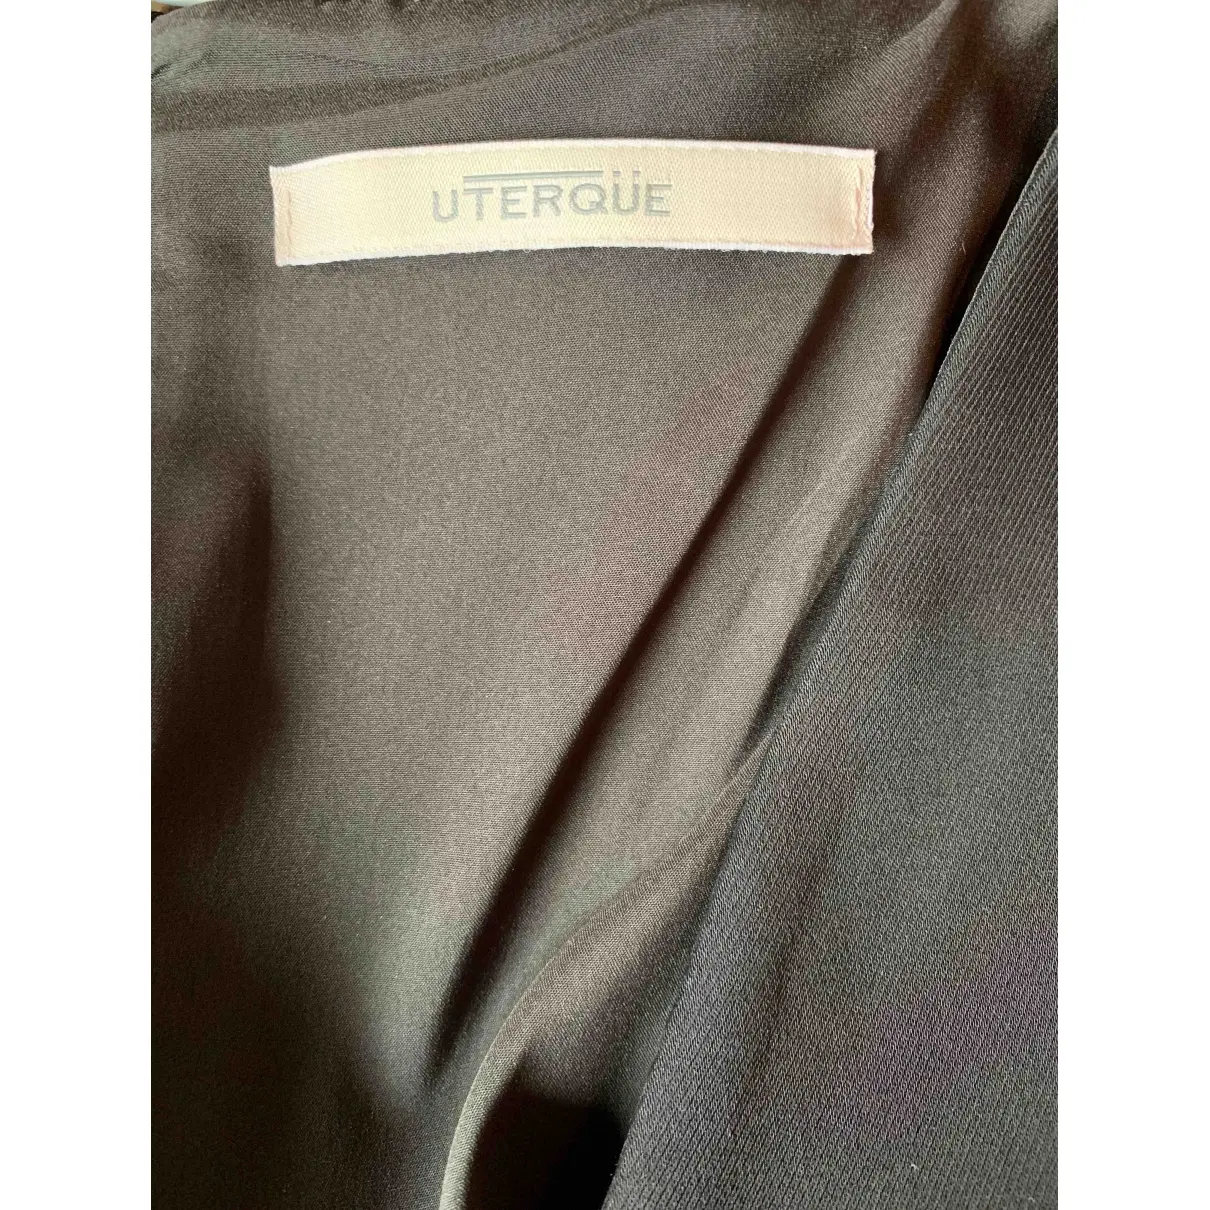 Buy Uterque Jumpsuit online